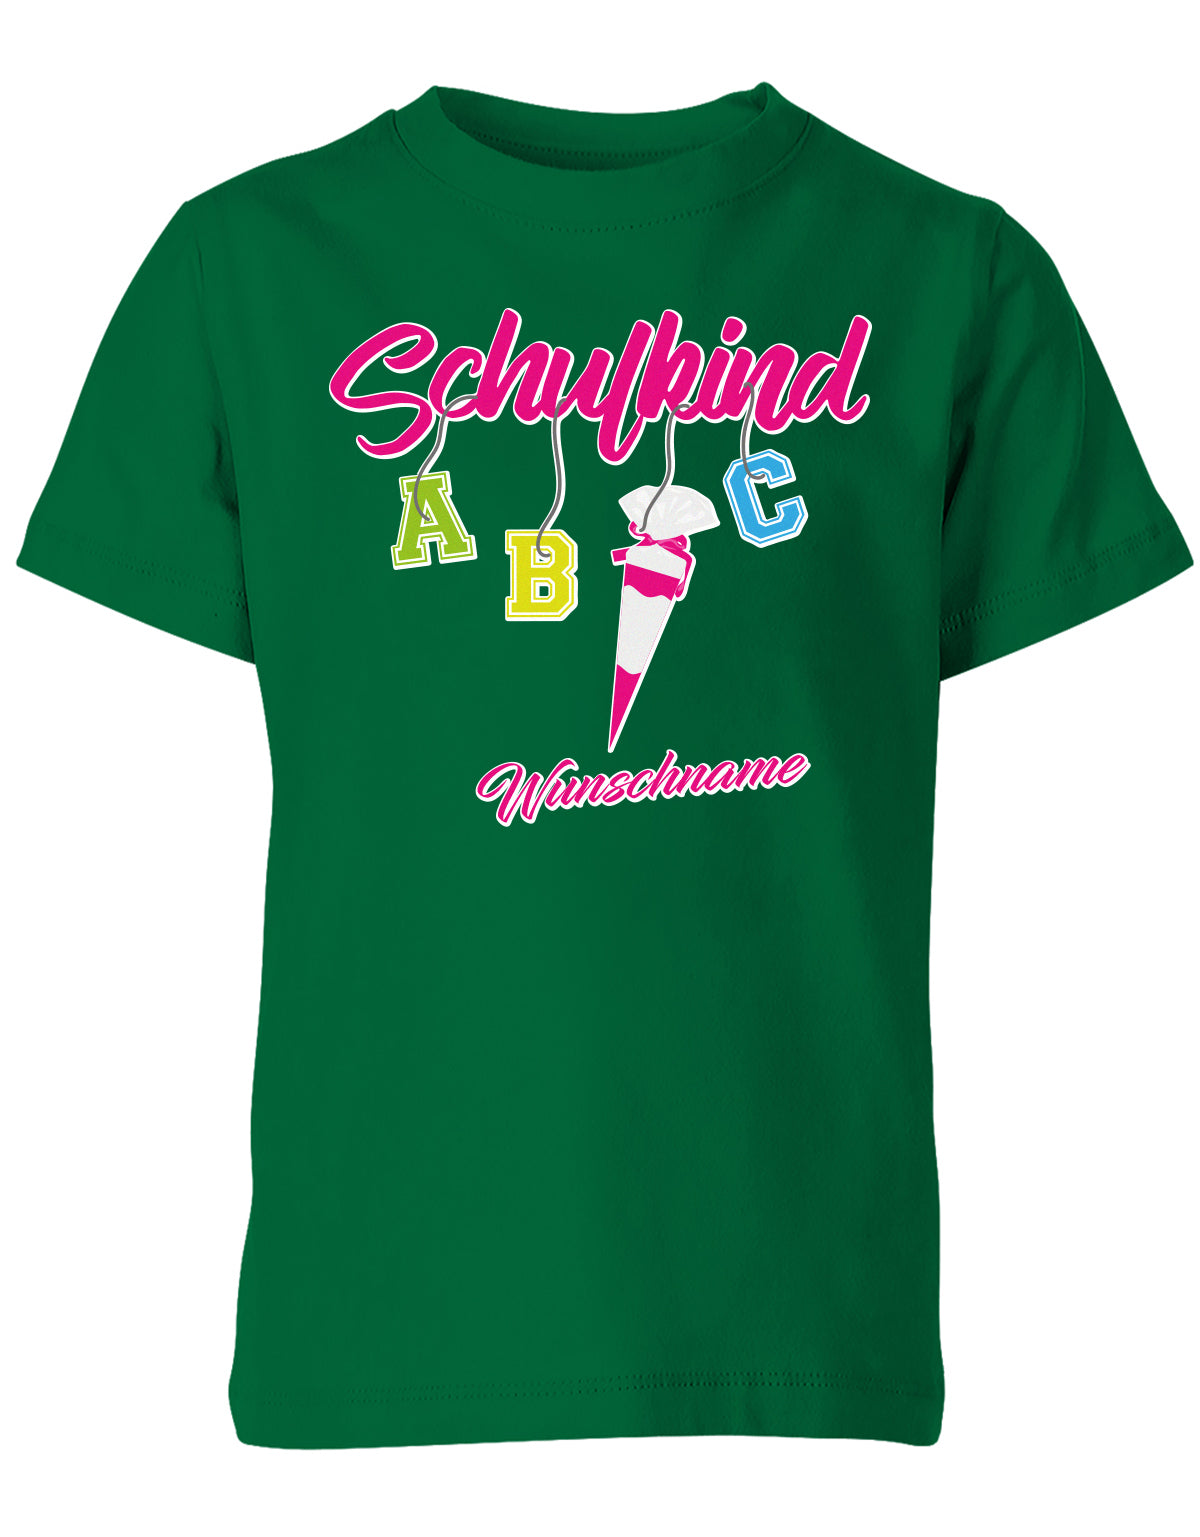 Schulkind ABC Schultüte Wunschname Blau oder Pink Einschulung Kinder T-Shirt Grün pink